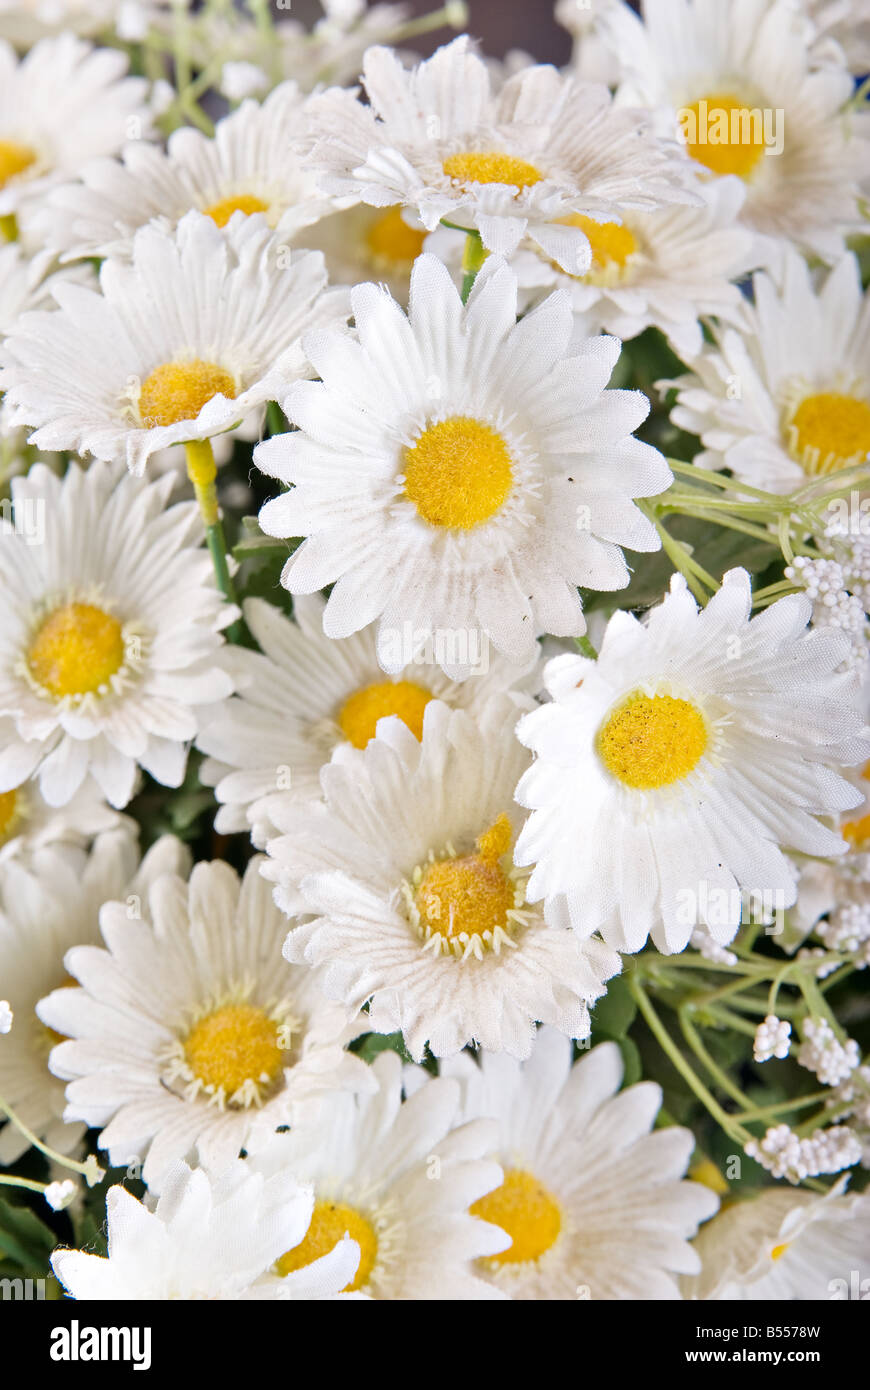 tolles Bild von ein paar weiße Seide Gänseblümchen Blumen Stockfoto